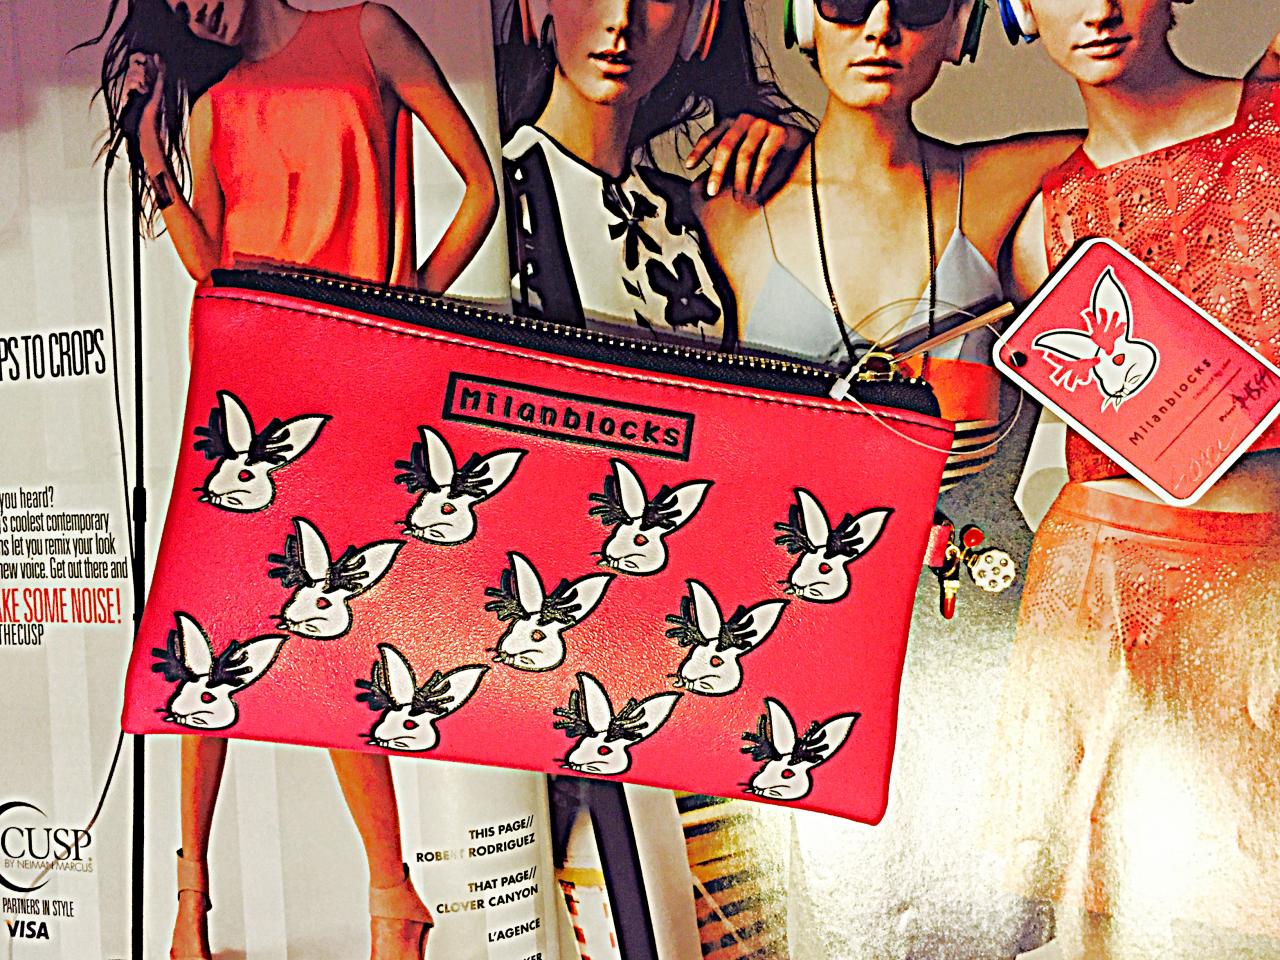 Milanblocks Engrave Relief Jackalope Wallet Perfume Lips Cosmetic Bag Pink Purse Designer Creative Retro Vintage Wallet And Purse